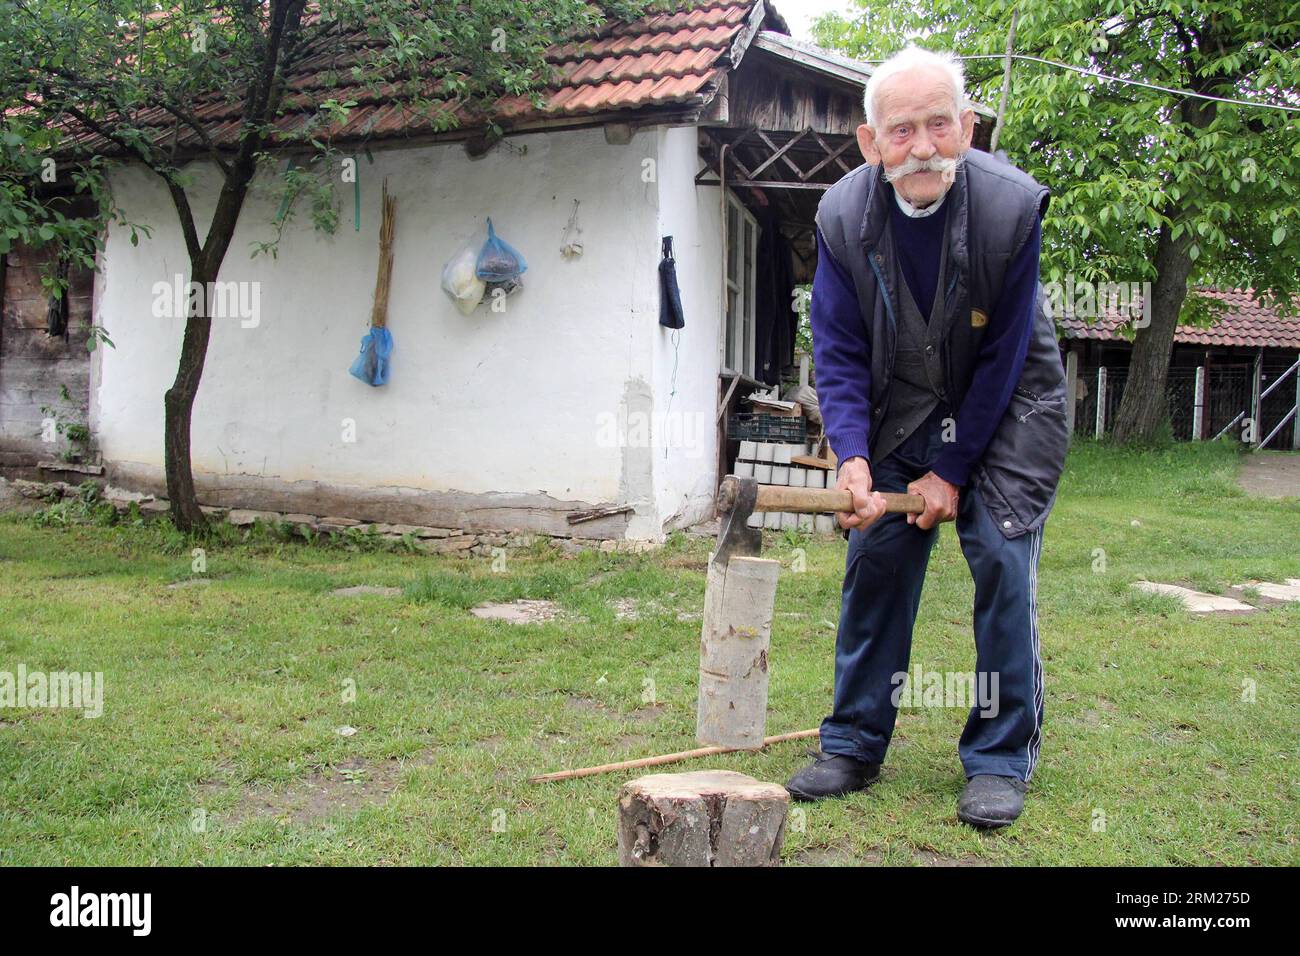 Bildnummer : 59722667 Datum : 28.05.2013 Copyright : imago/Xinhua (130528) -- BANJA LUKA, 28 mai 2013 (Xinhua) -- Galic, âgé de 105 ans, travaille dans sa cour dans un village près de Banja Luka, Bosnie-Herzégovine (FBiH), le 28 mai 2013. Galic a eu un stimulateur cardiaque implanté à l'âge de 103 ans, ce qui est rare dans le monde, selon un médecin local. (Xinhua/Borislav Zdrinja) BOSNIE-HERZÉGOVINE-HOMME-PACEMAKER-VIE QUOTIDIENNE PUBLICATIONxNOTxINxCHN xcb x0x 2013 quer 59722667 Date 28 05 2013 Copyright Imago XINHUA Banja Luka Mai 28 2013 XINHUA qui A 105 ans travaille dans sa cour dans un village Banque D'Images